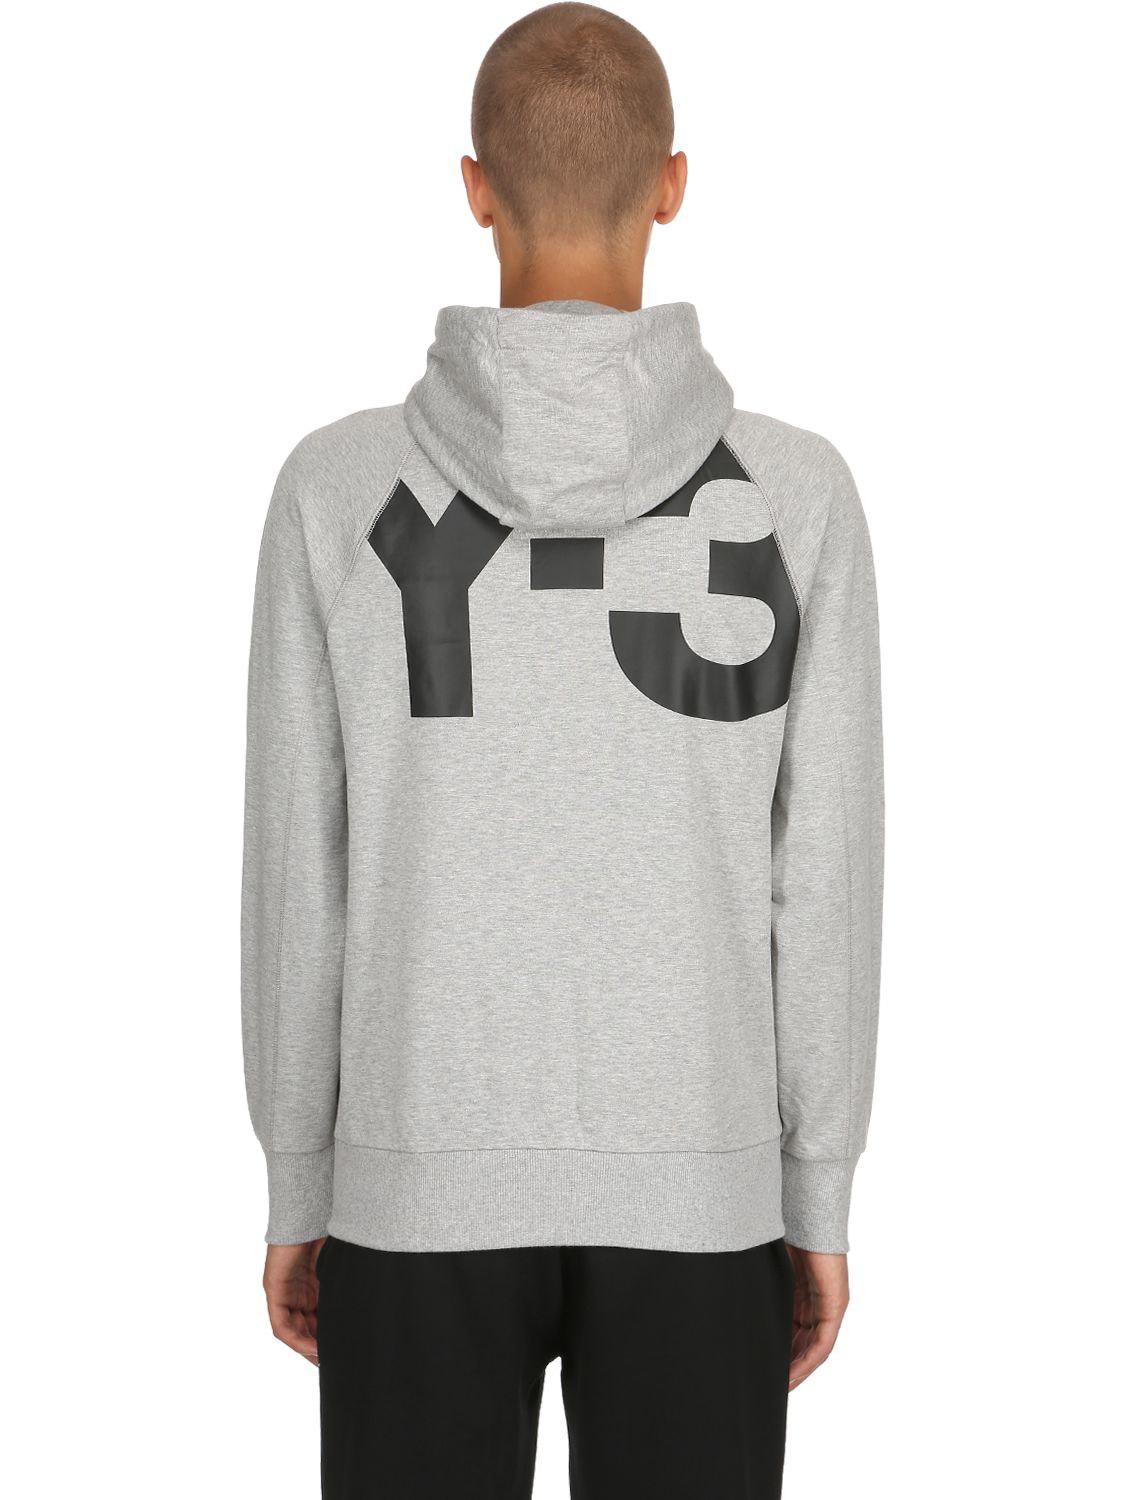 Y-3 Logo Zip-up Cotton Sweatshirt Hoodie in Grey (Gray) for Men - Lyst